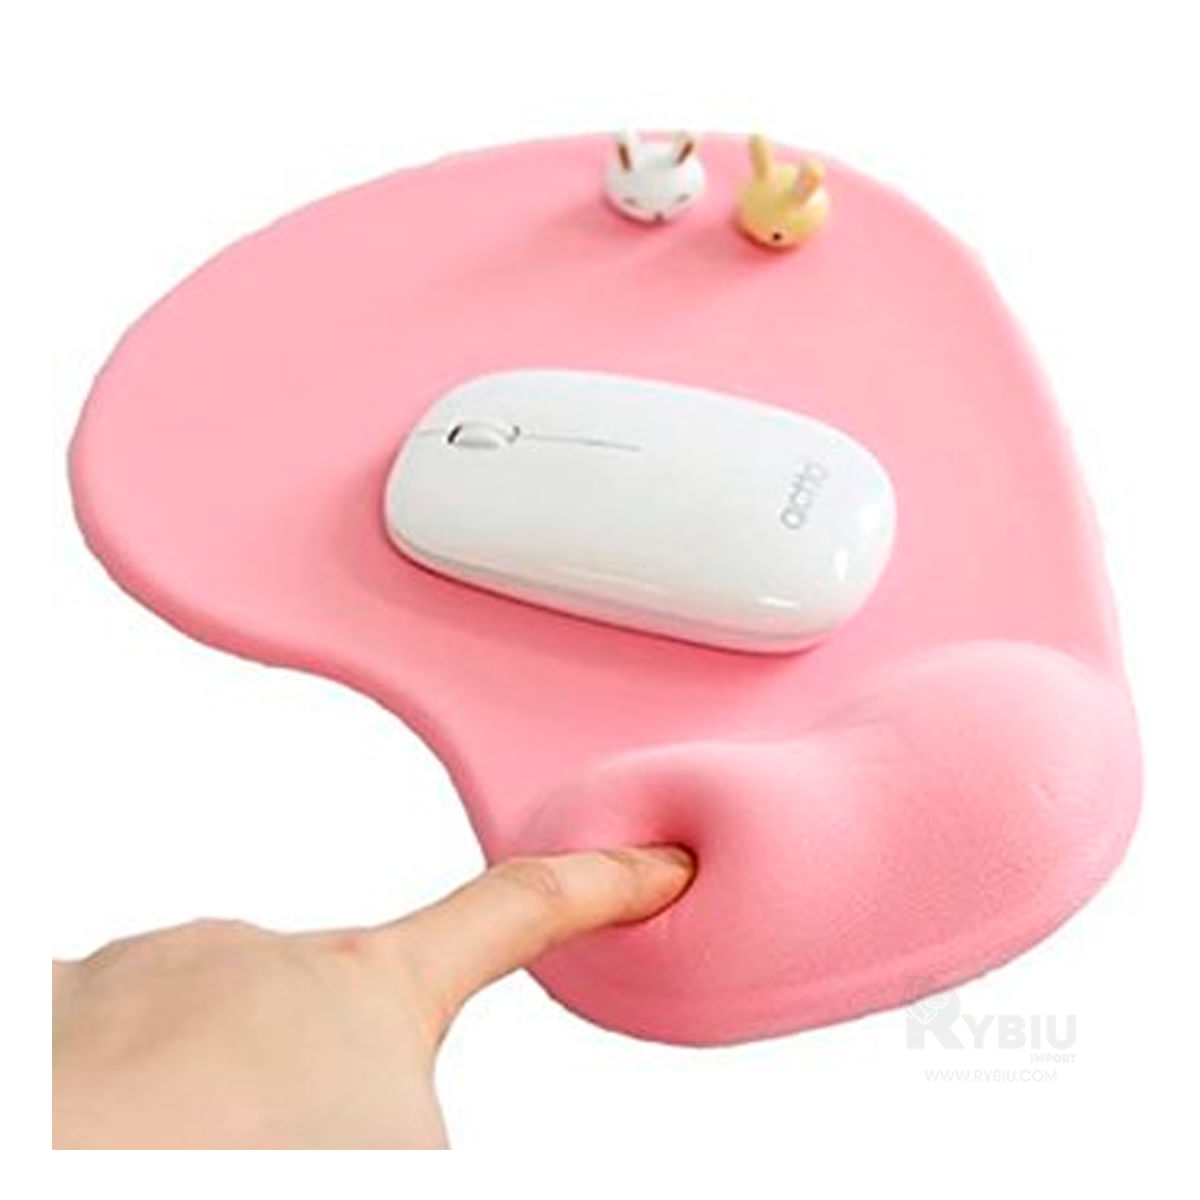 Pad Mouse Color Rosado con Descansador de Mano